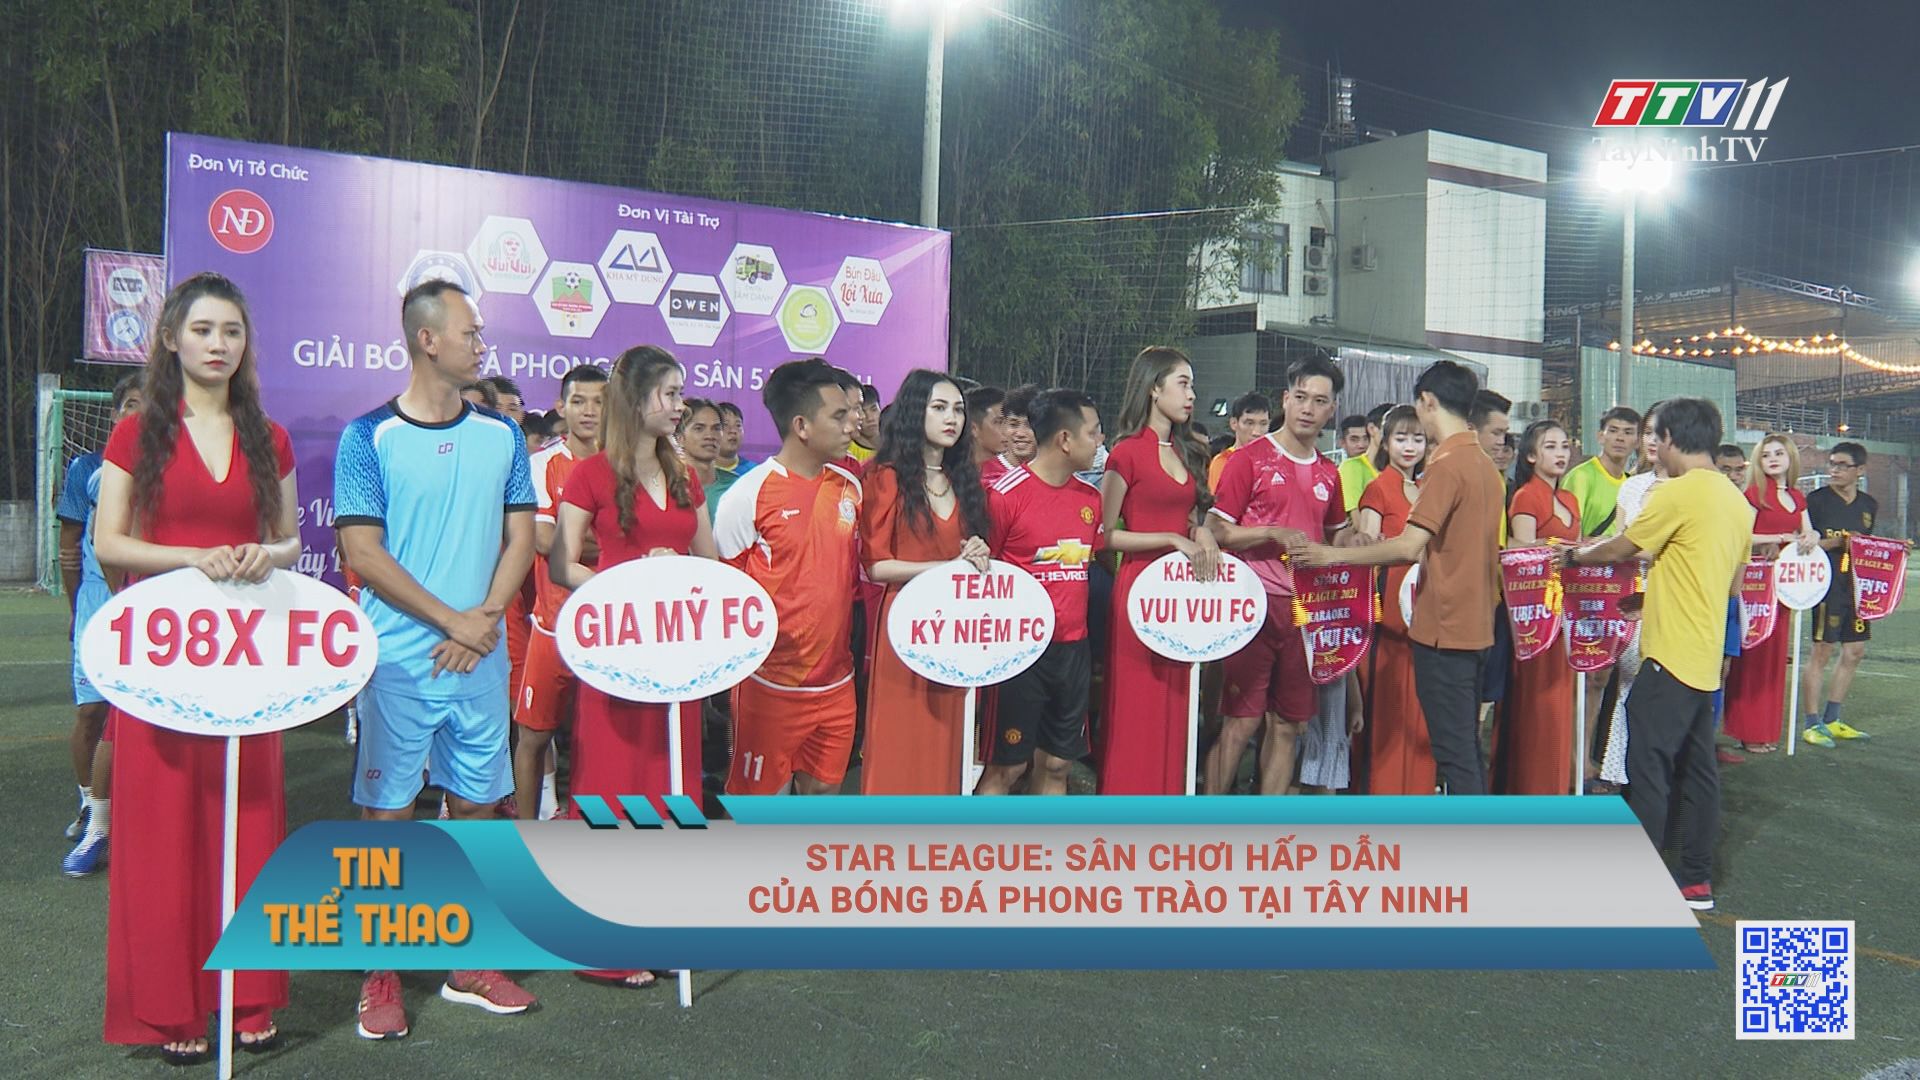 Start League: sân chơi hấp dẫn của bóng đá phong trào tại Tây Ninh | BẢN TIN THỂ THAO | TayNinhTVE